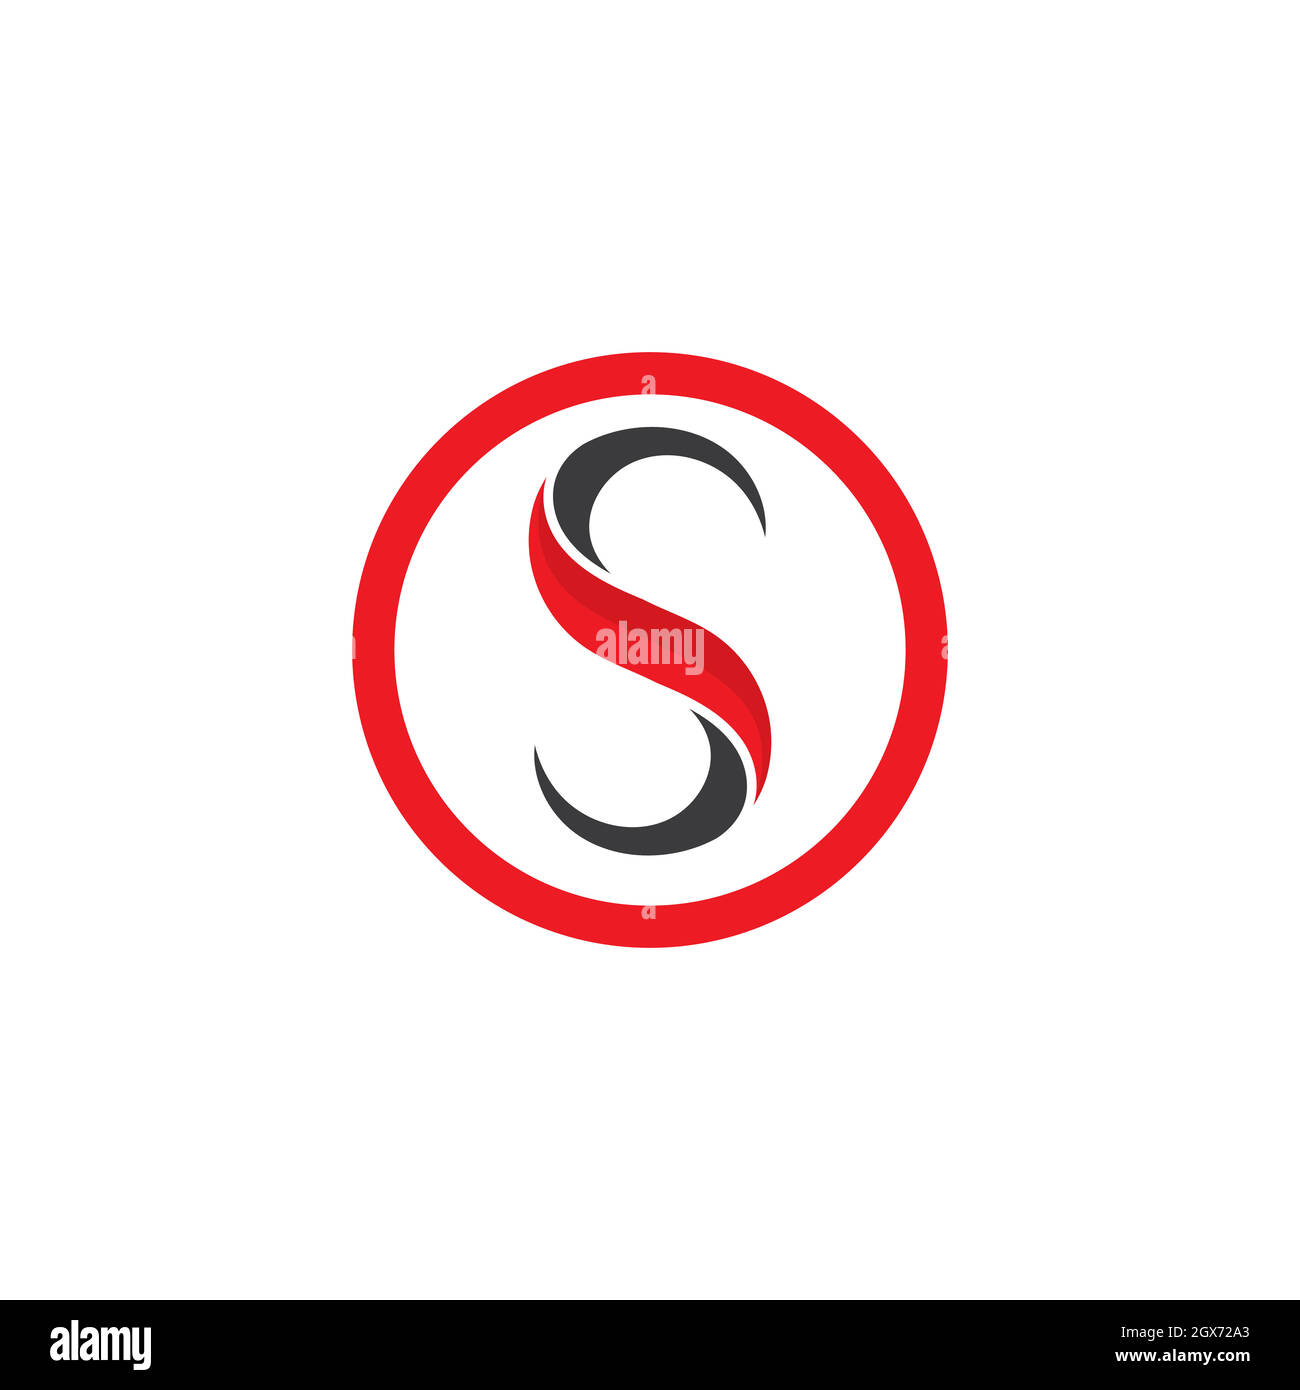 S letter logo Stock Vector